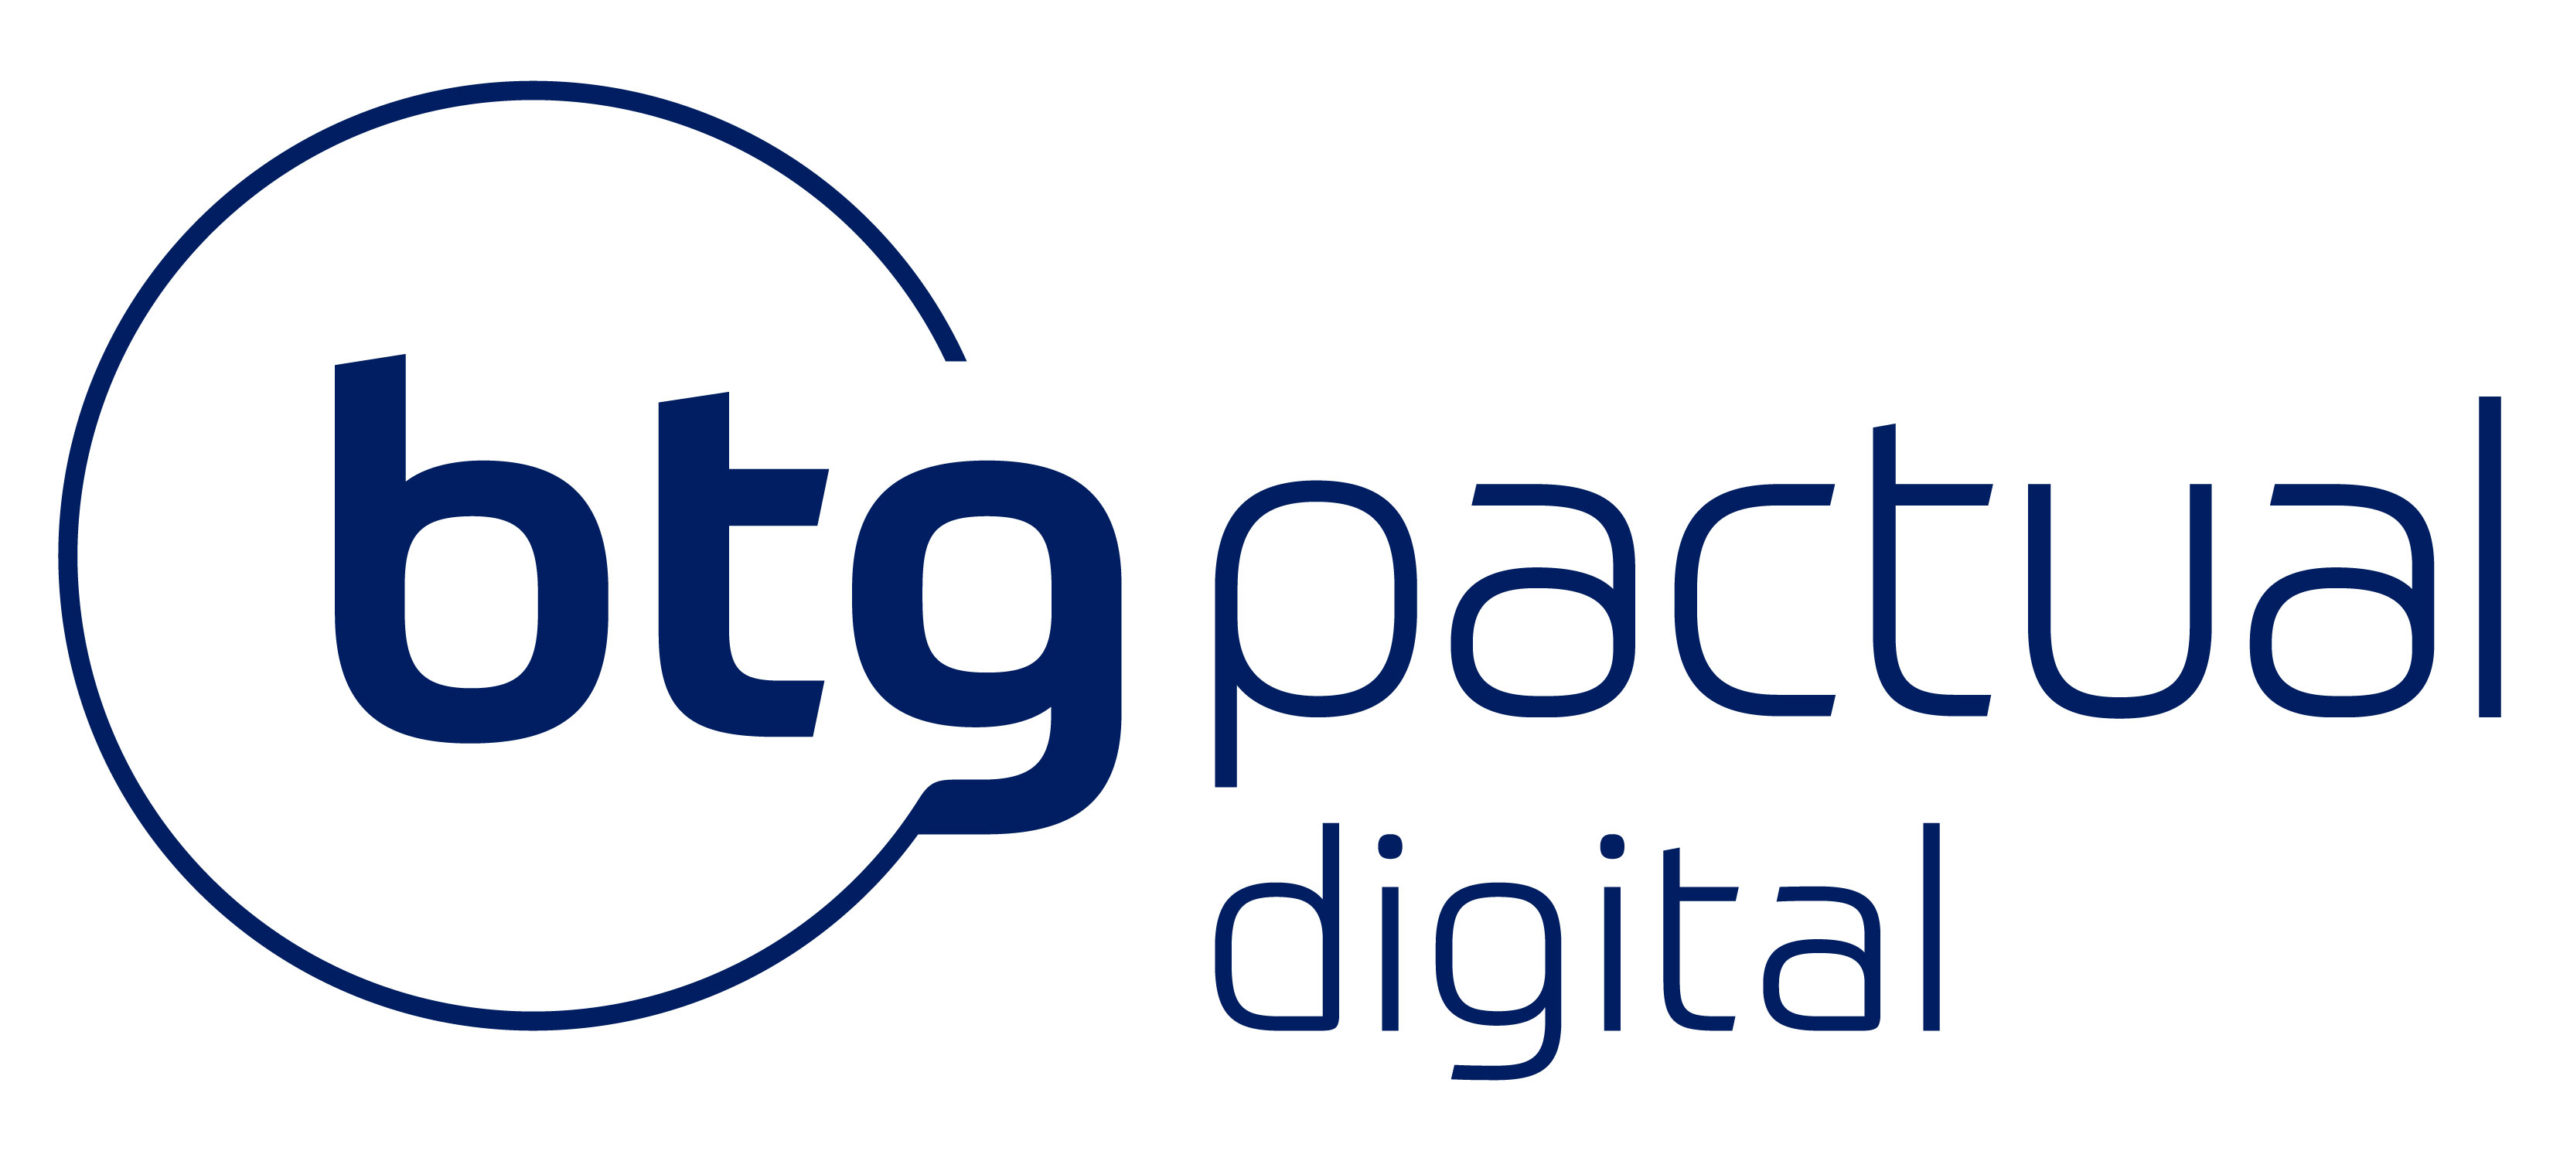 BTG Pactual digital